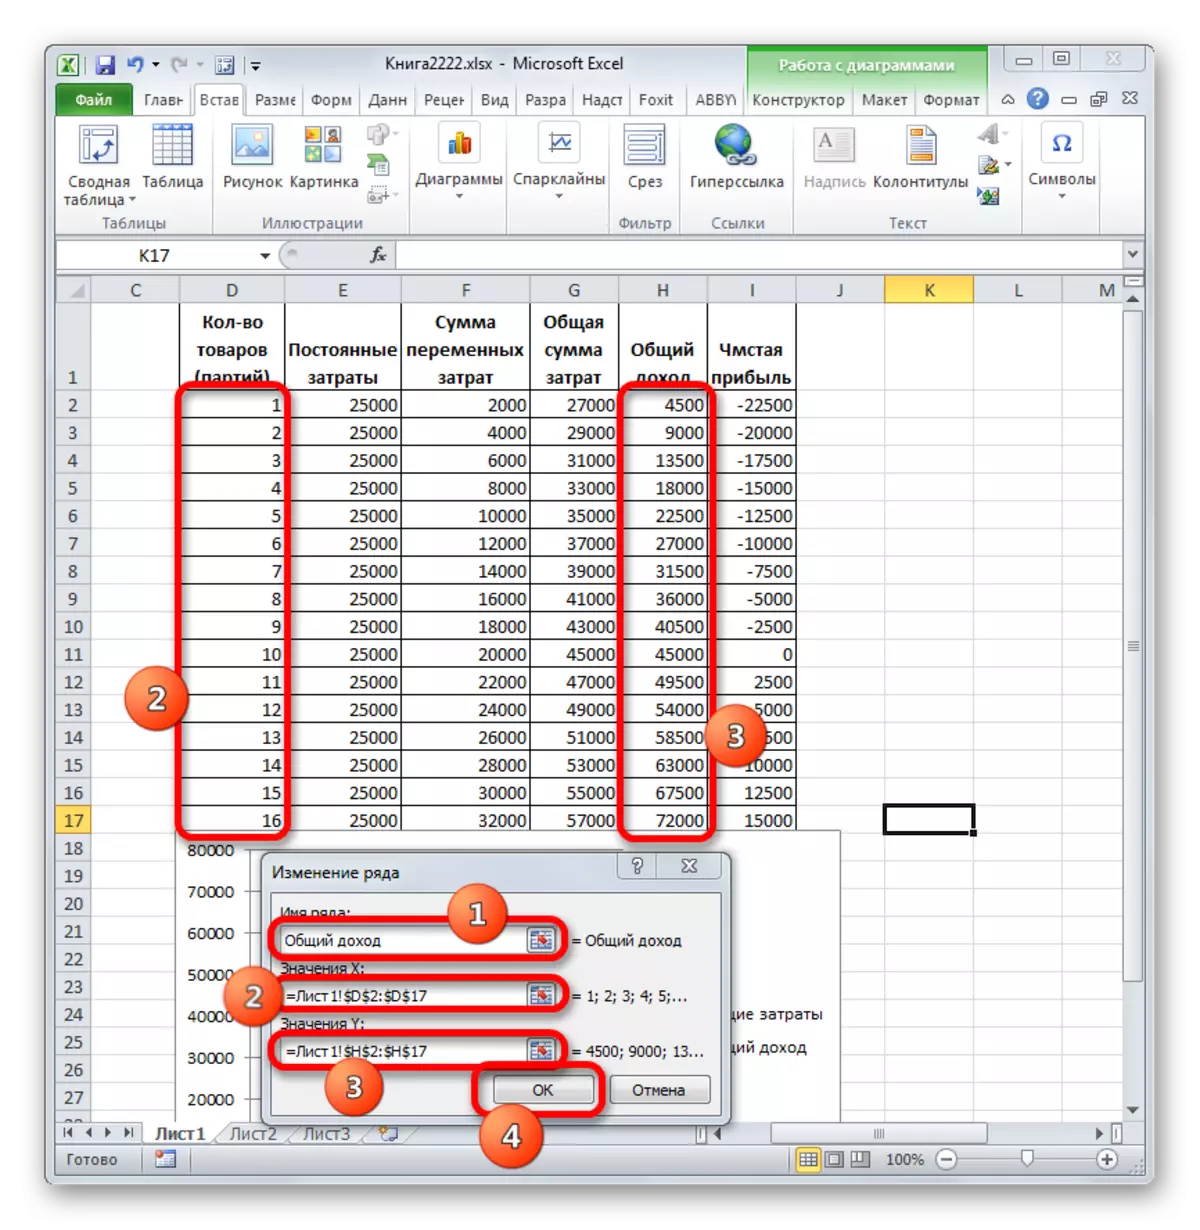 Microsoft Excel లో వరుస మొత్తం ఆదాయంలో విండో మార్పులు